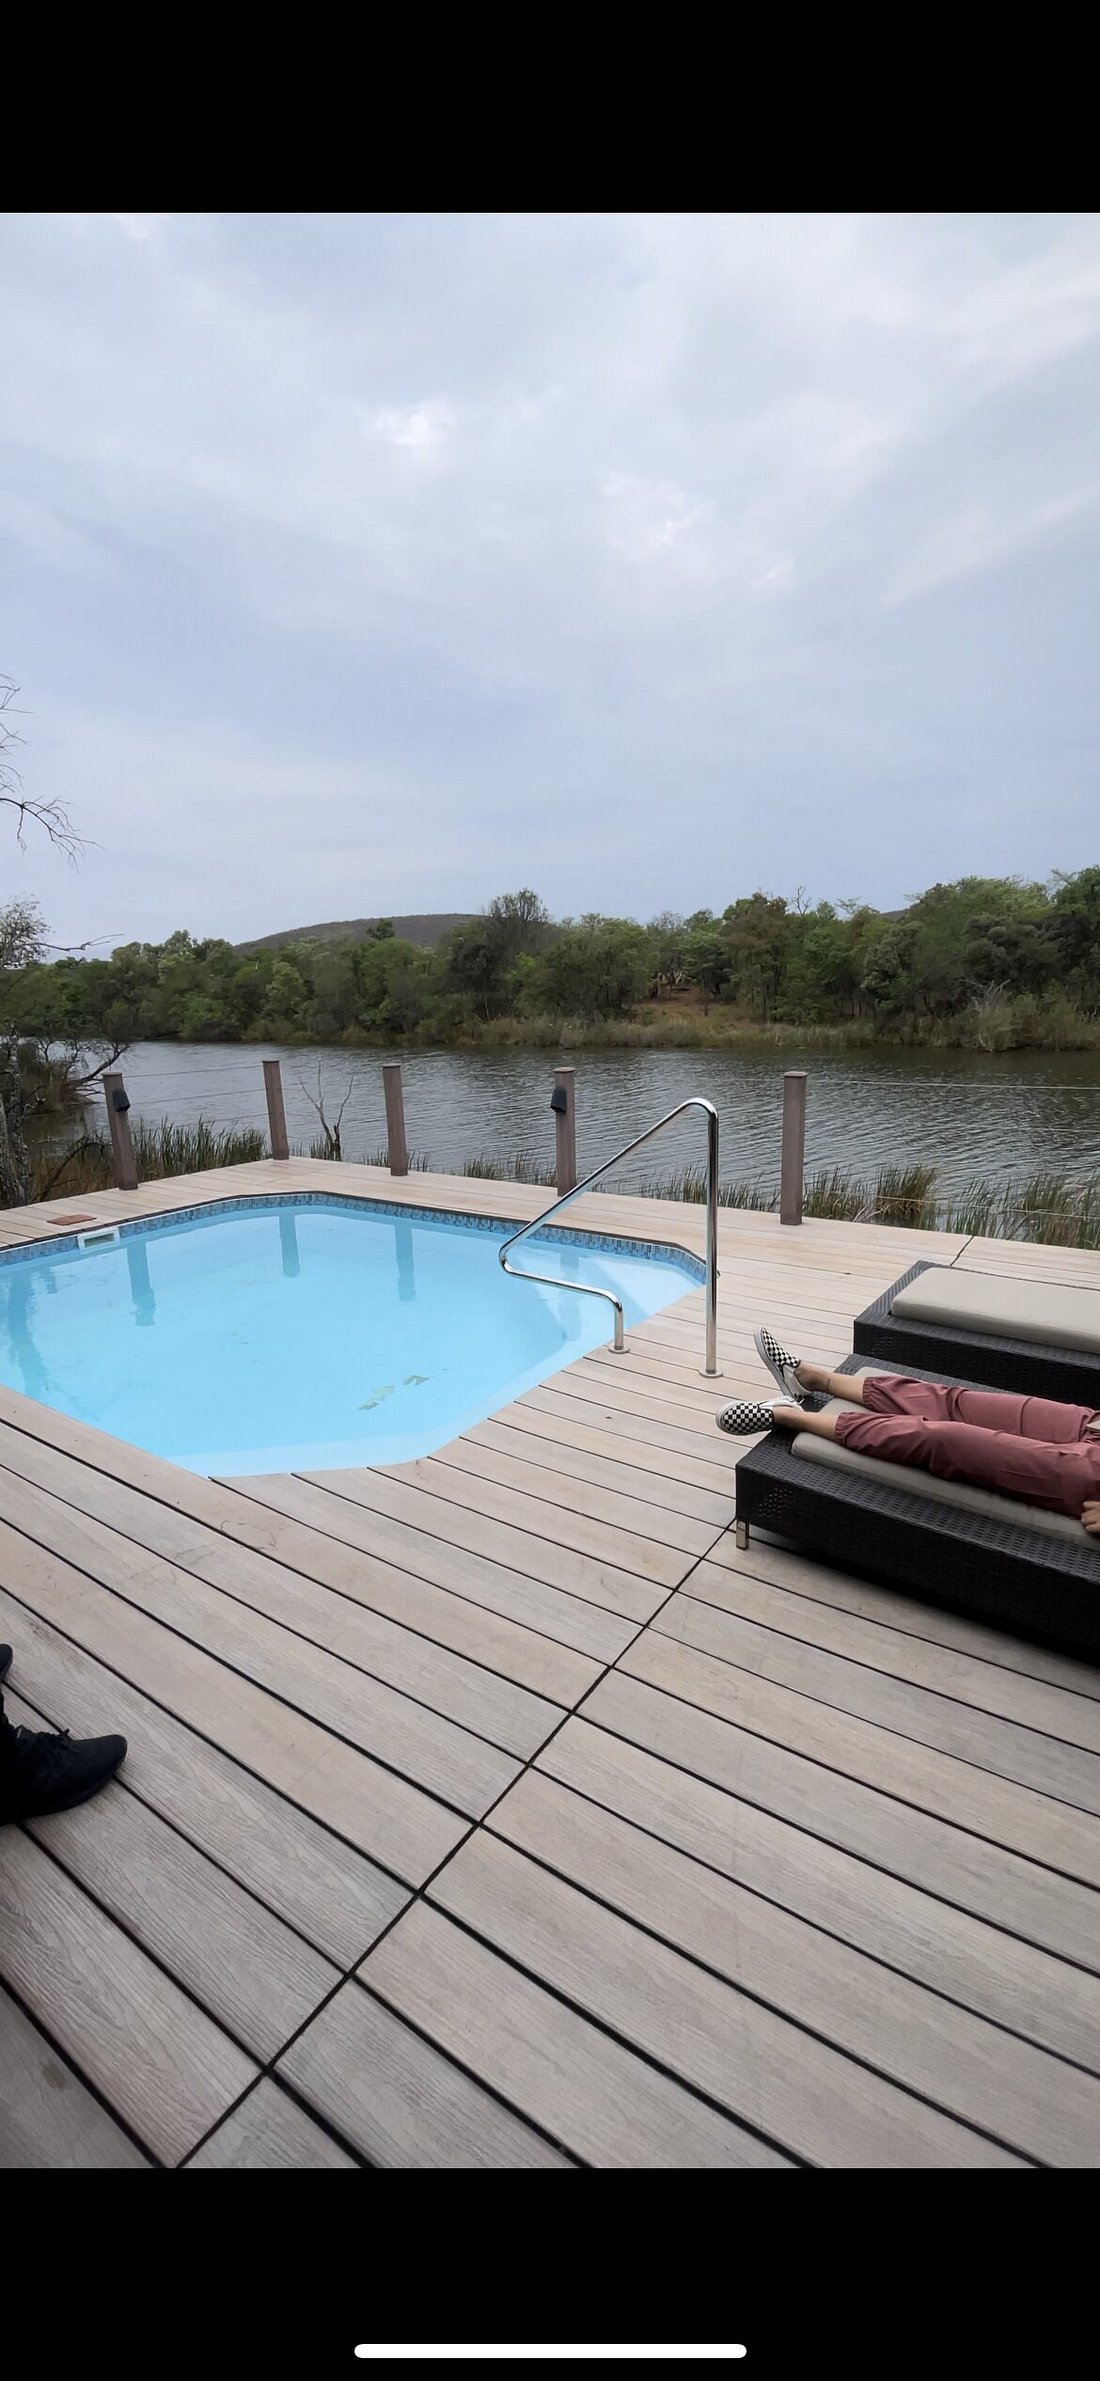 hippo lakes luxury safari lodge photos